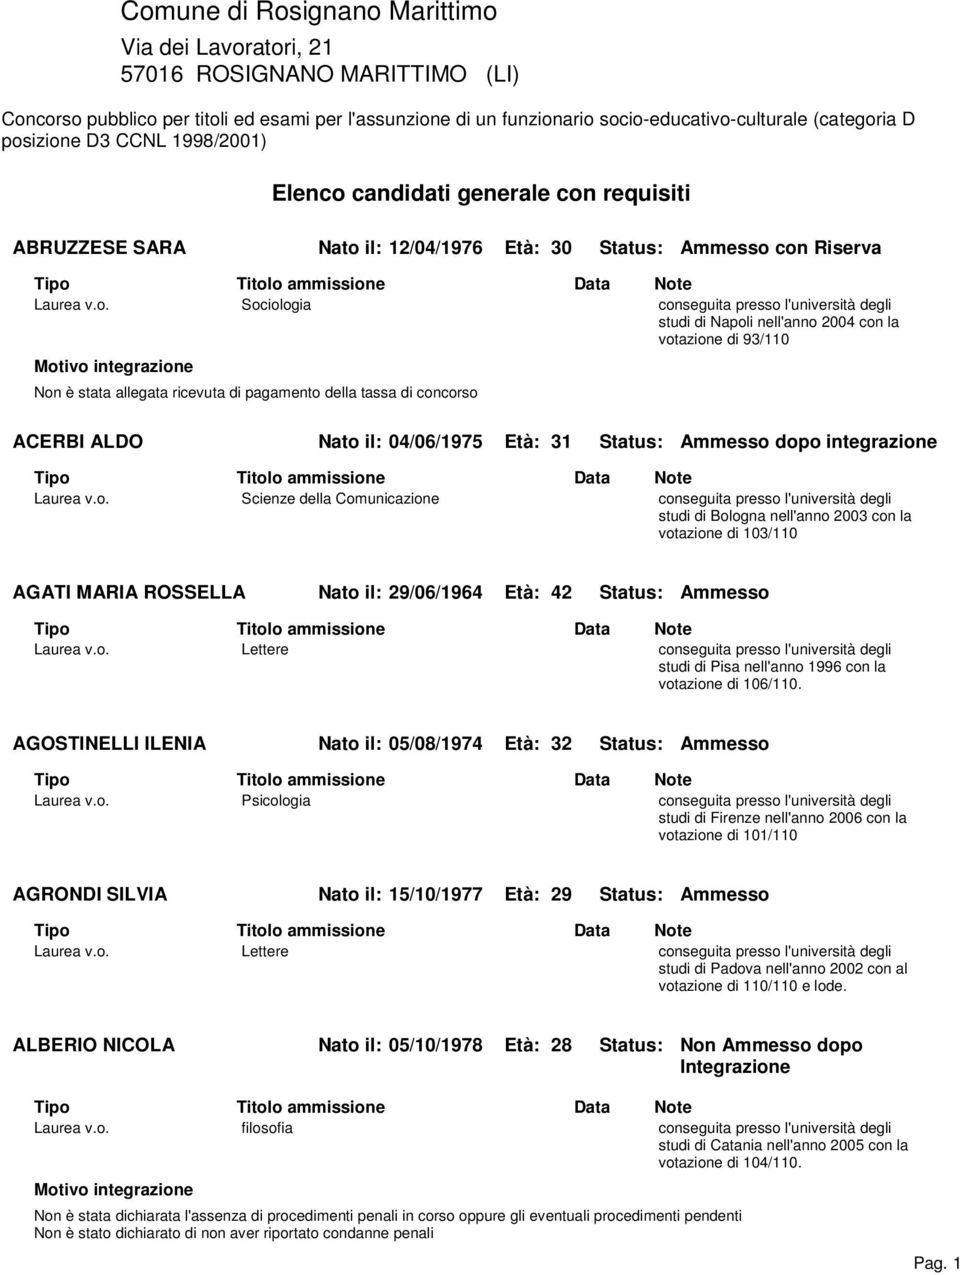 Napoli nell'anno 2004 con la votazione di 93/110 Motivo integrazione Non è stata allegata ricevuta di pagamento della tassa di concorso ACERBI ALDO Nato il: 04/06/1975 Età: 31 Status: Ammesso dopo